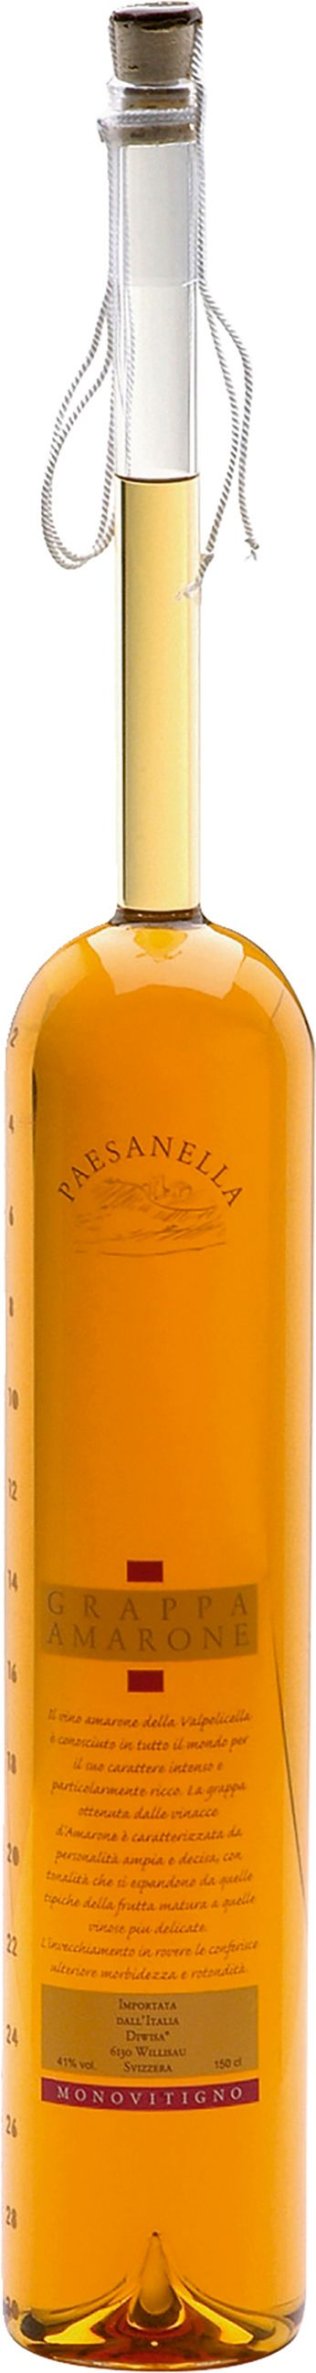 Grappa Amarone Paesanella 150 cl 1er